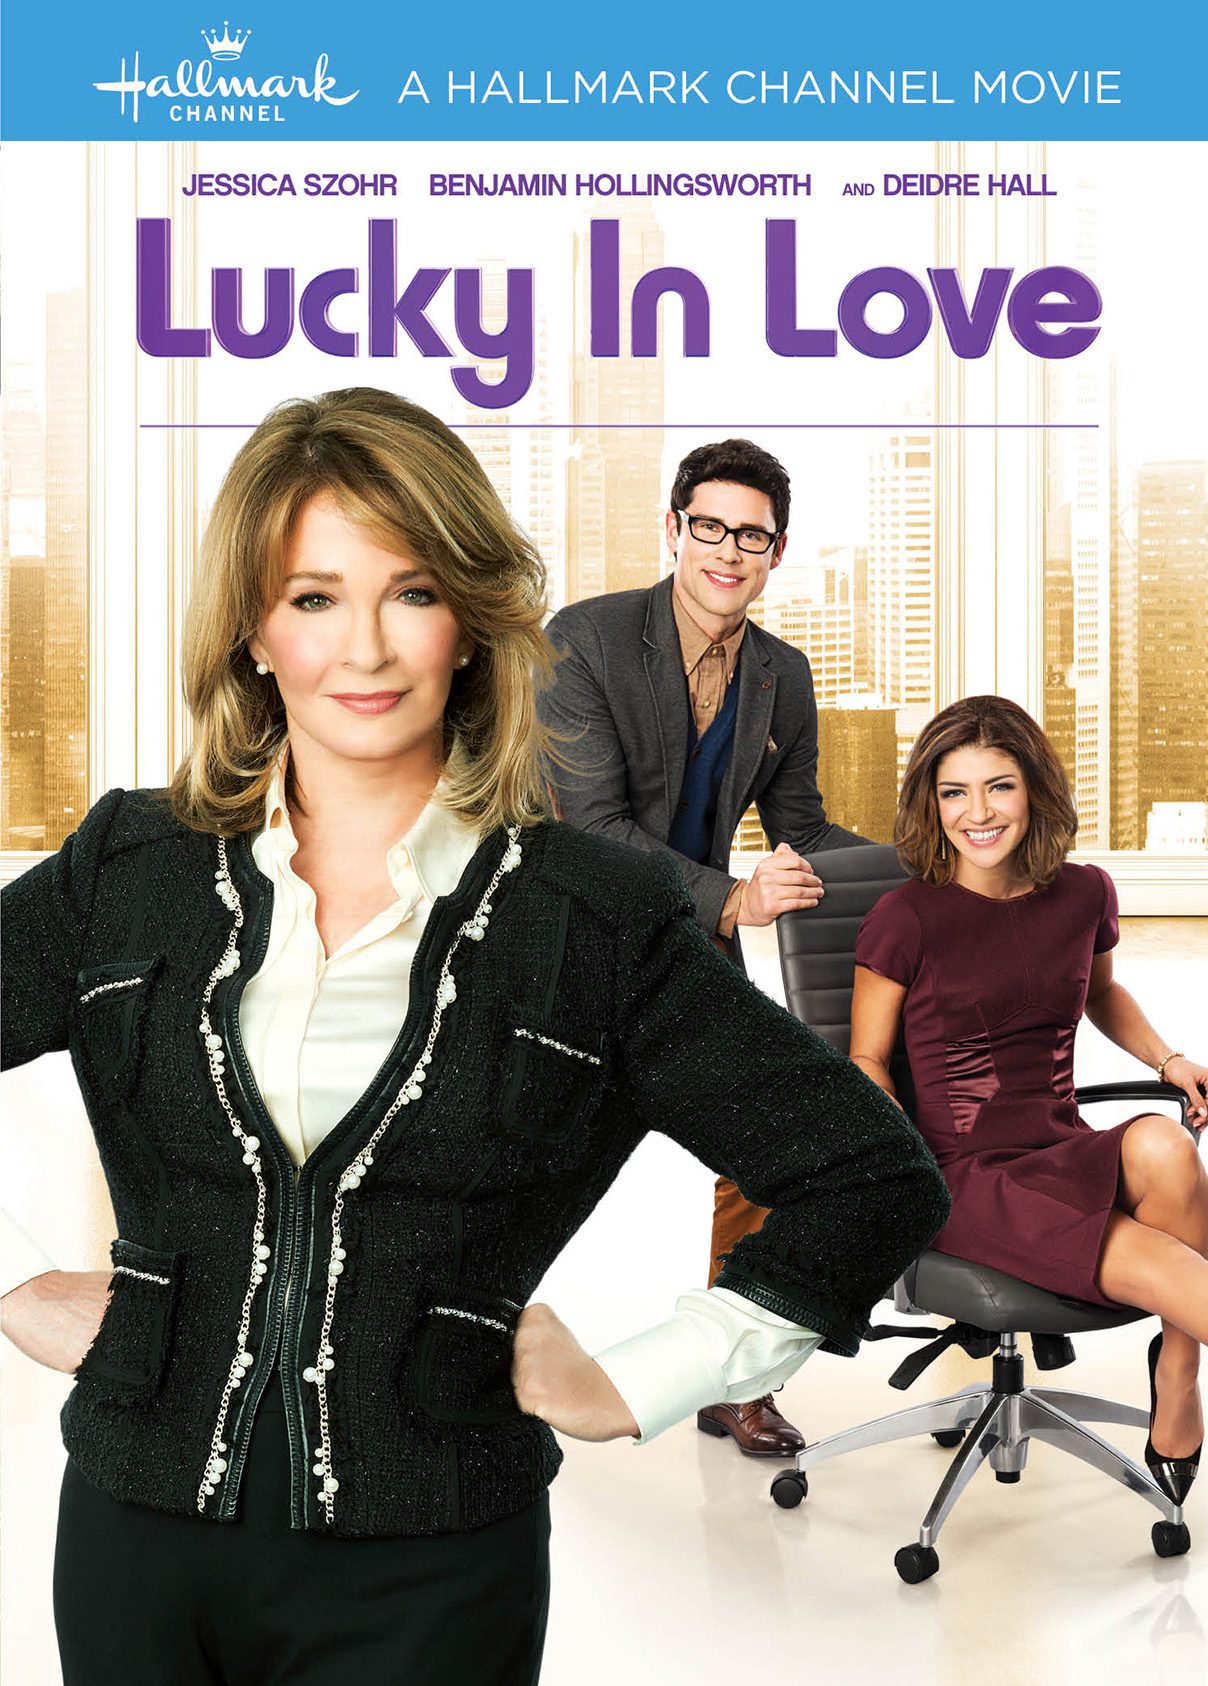 Lucky In Love DVD starring Deidre Hall